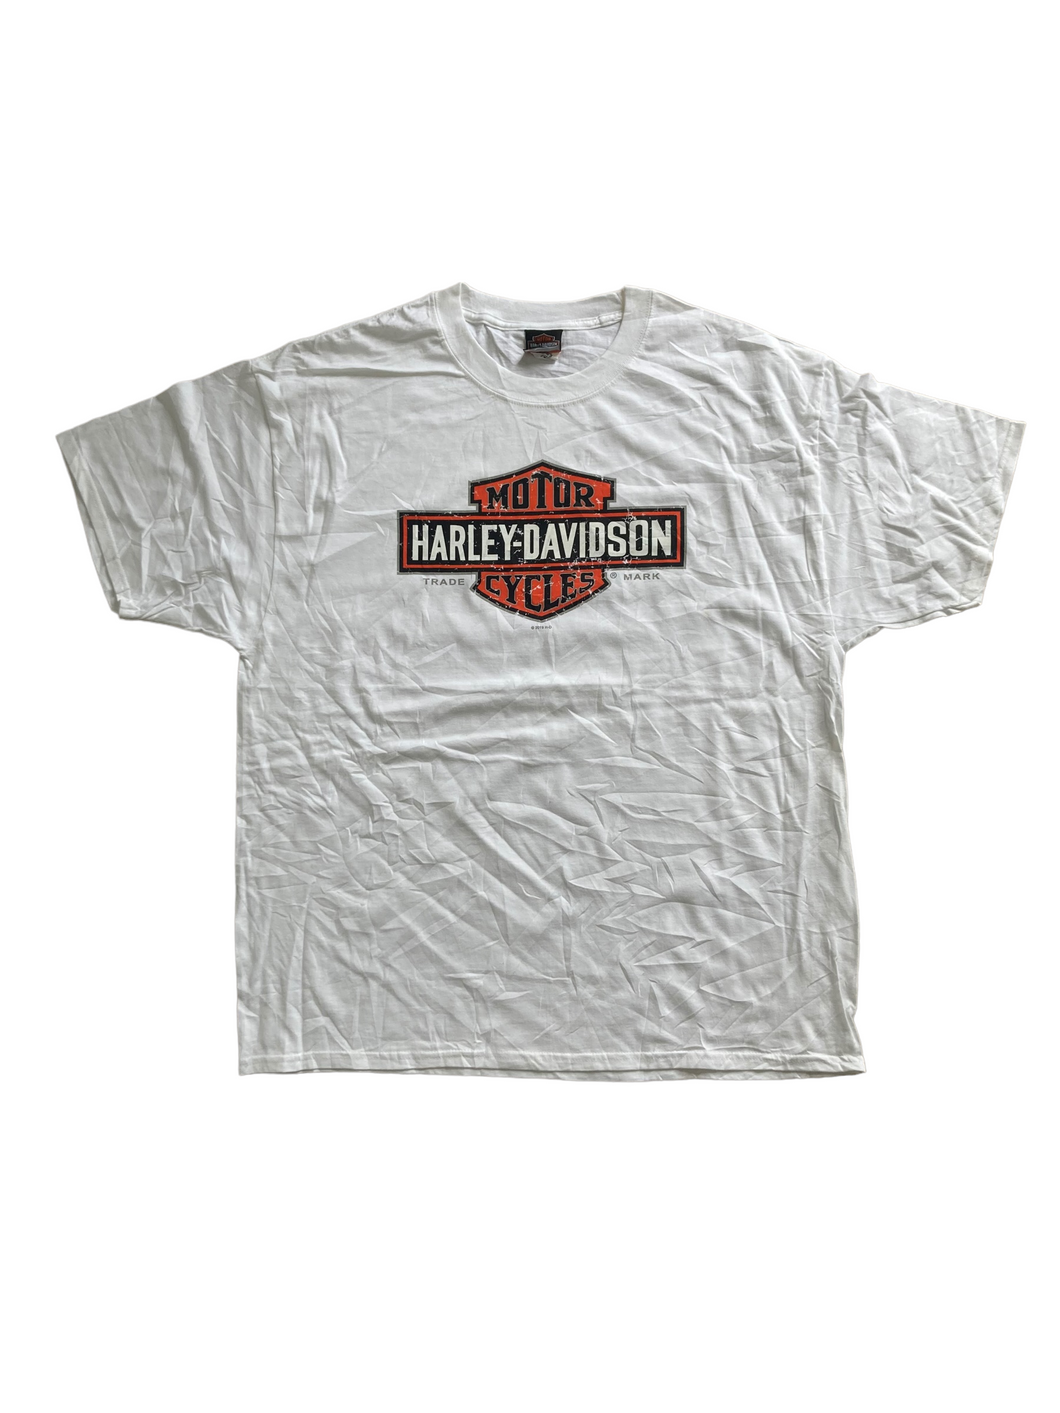 vintage white harley davidson motorcycles tshirt 